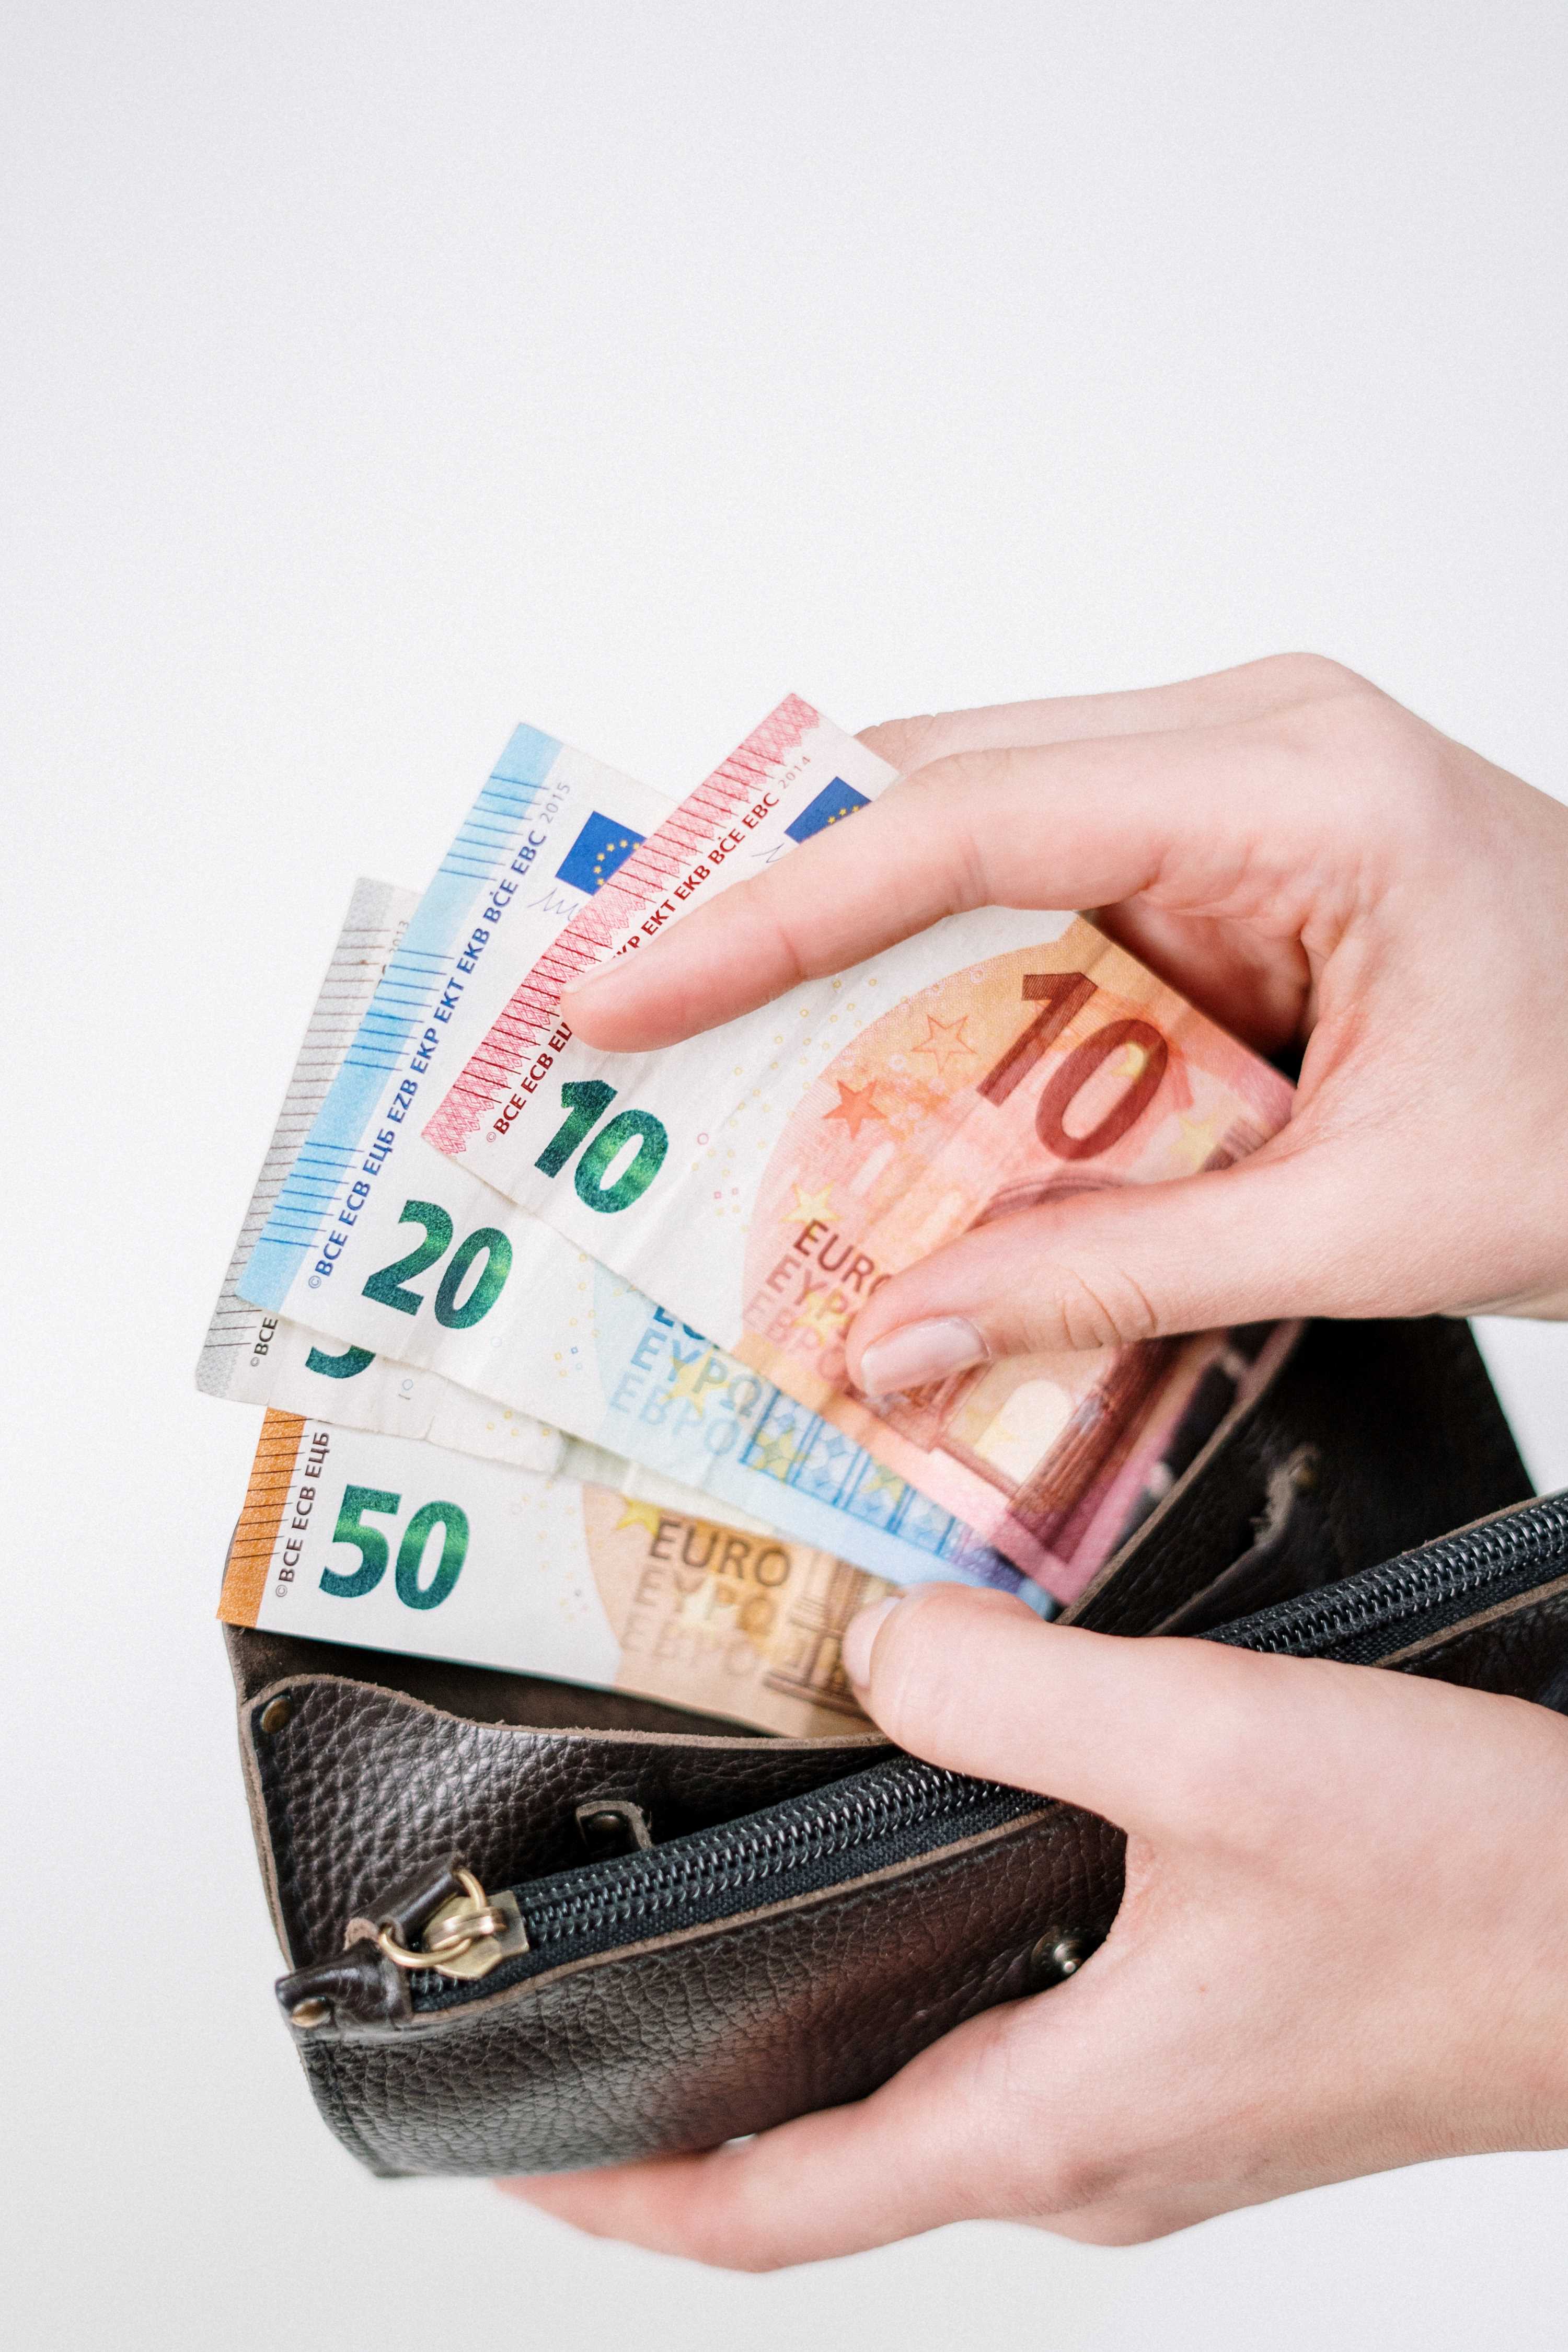 La imagen muestra una cartera abierta con una mano extrayendo varios billetes de euros.